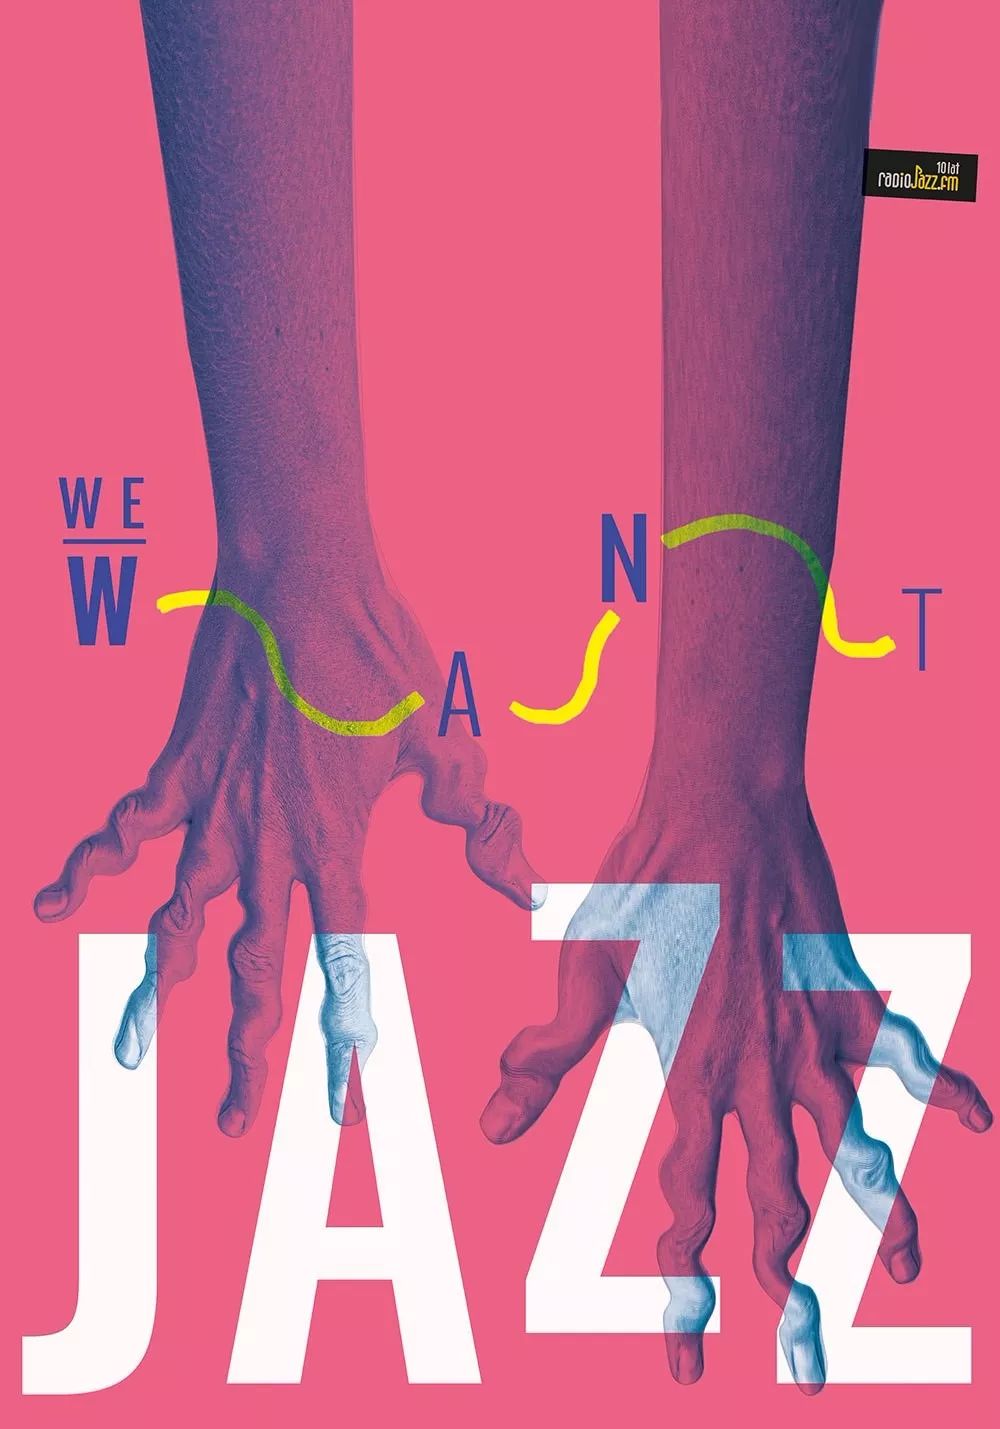 2019波兰We Want Jazz国际海报大赛获奖作品欣赏